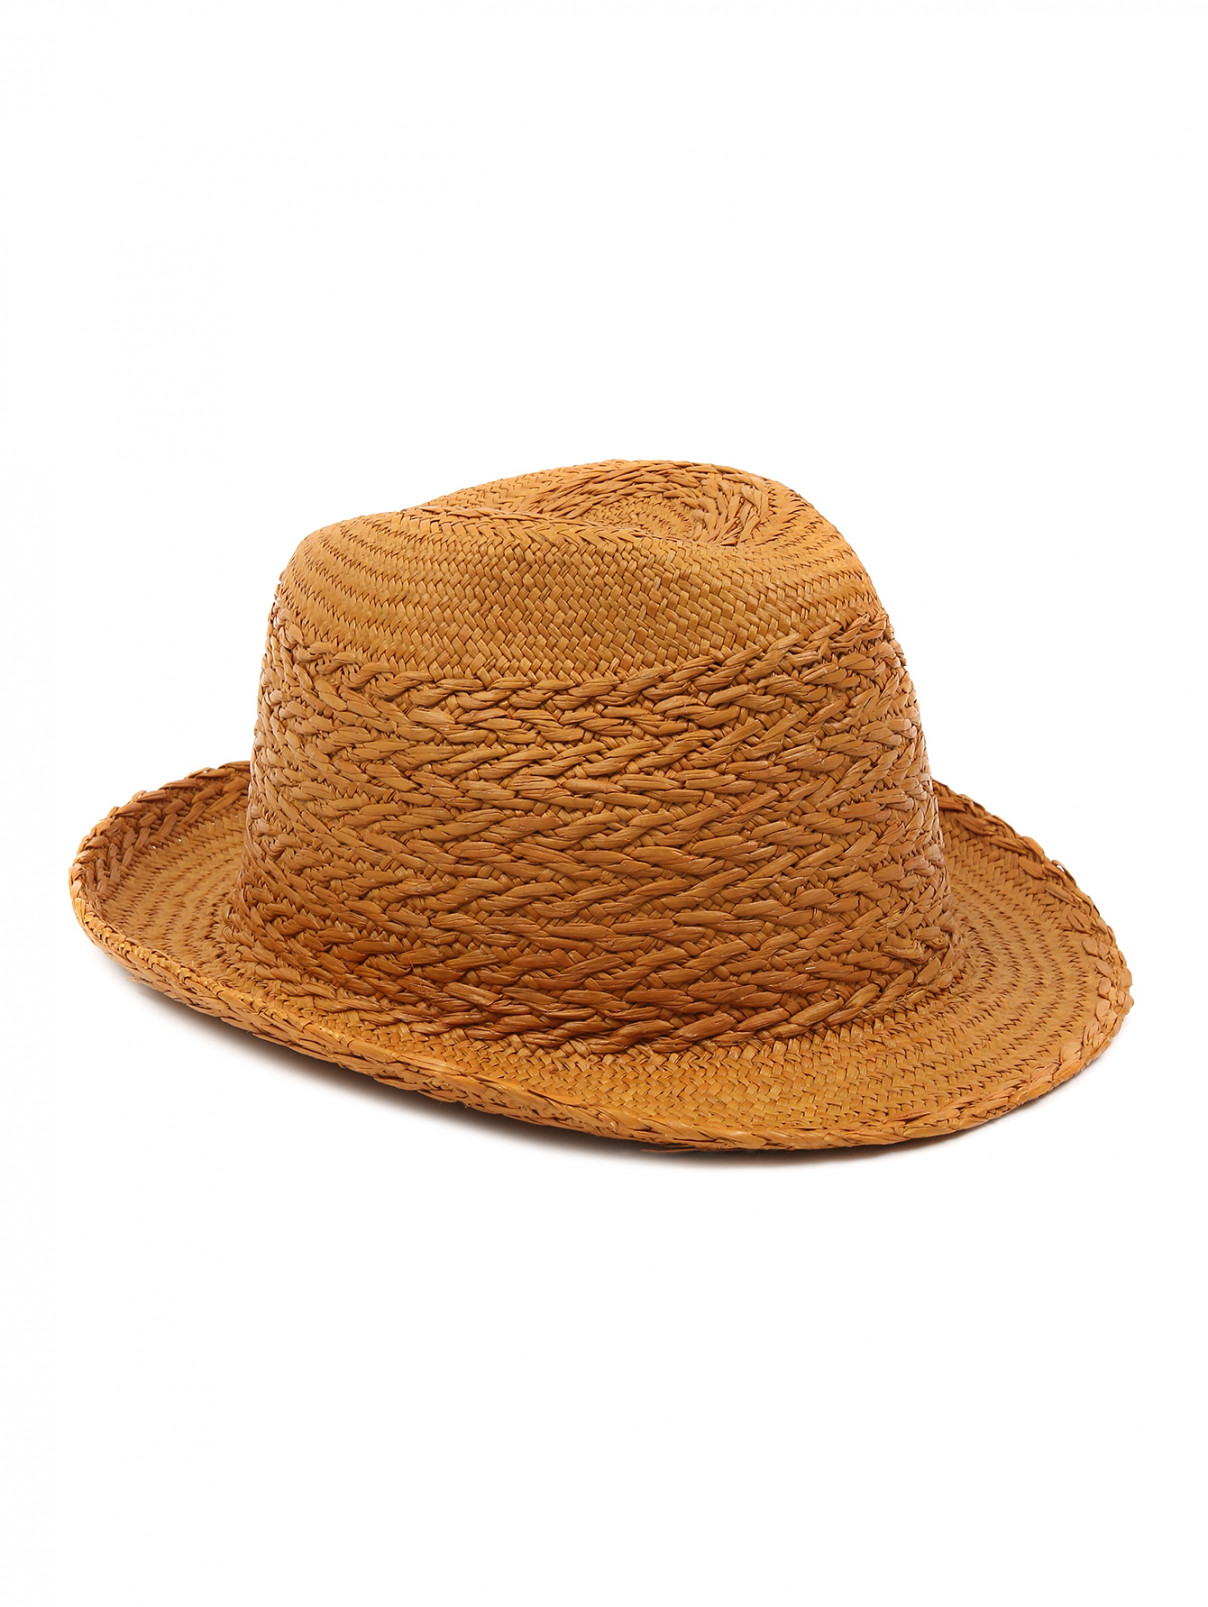 Шляпа Paul Smith  –  Общий вид  – Цвет:  Коричневый